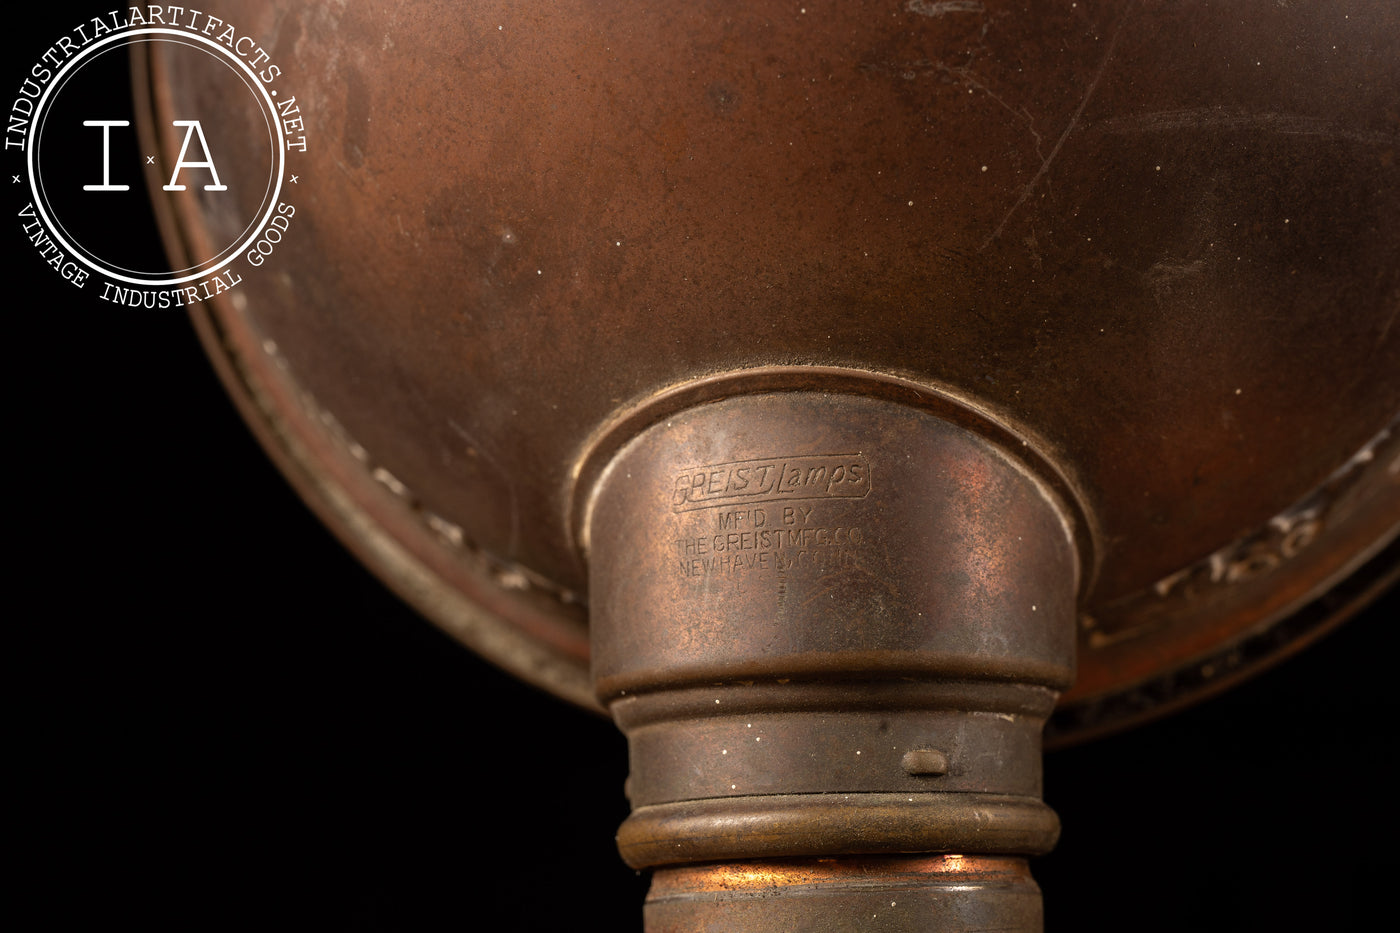 Vintage Greist Adjustable Copper Desk Lamp